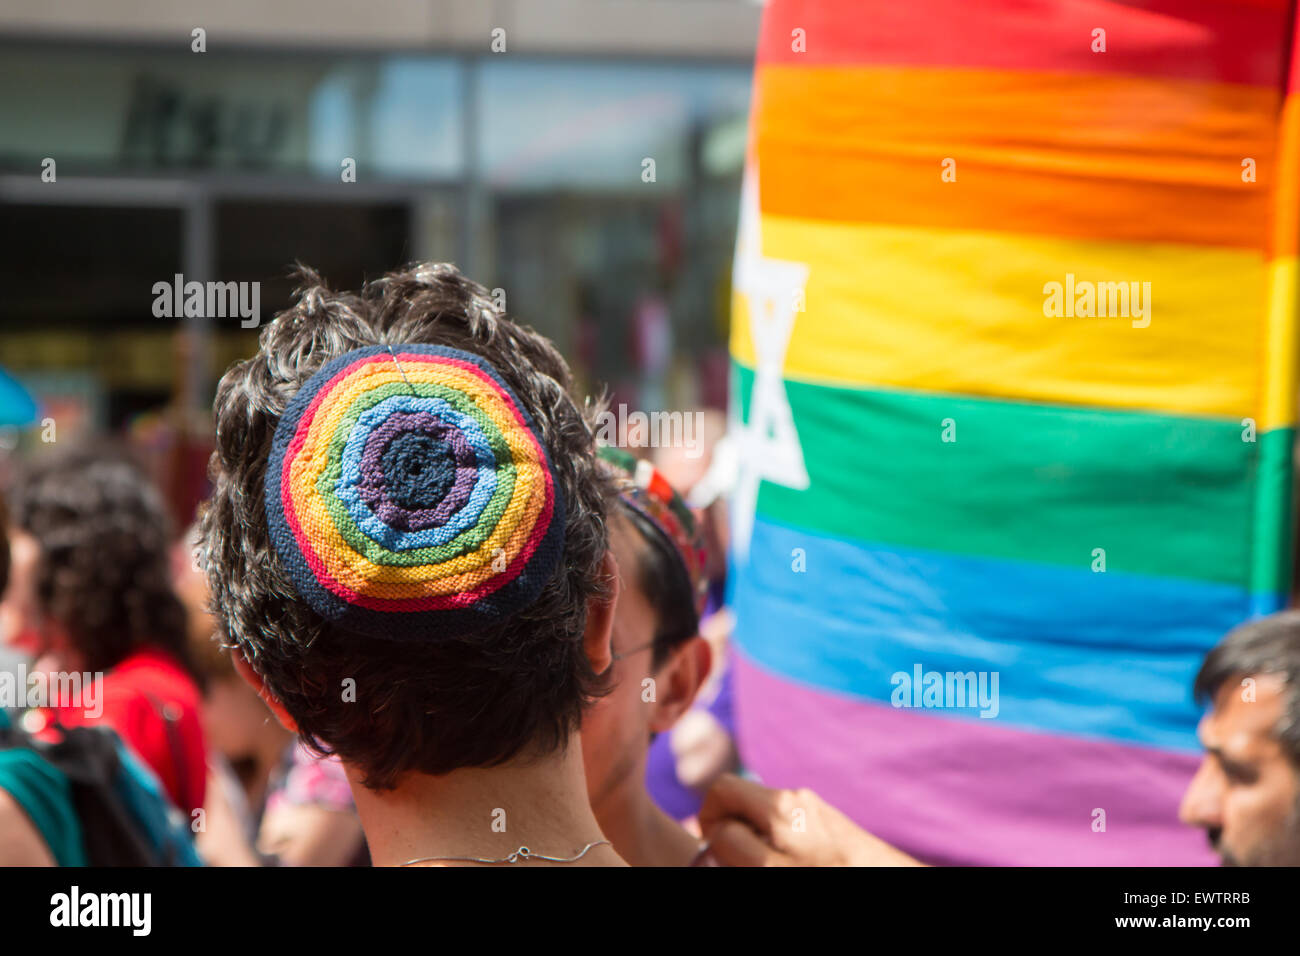 Résultat de recherche d'images pour "homosexuels en kippa"